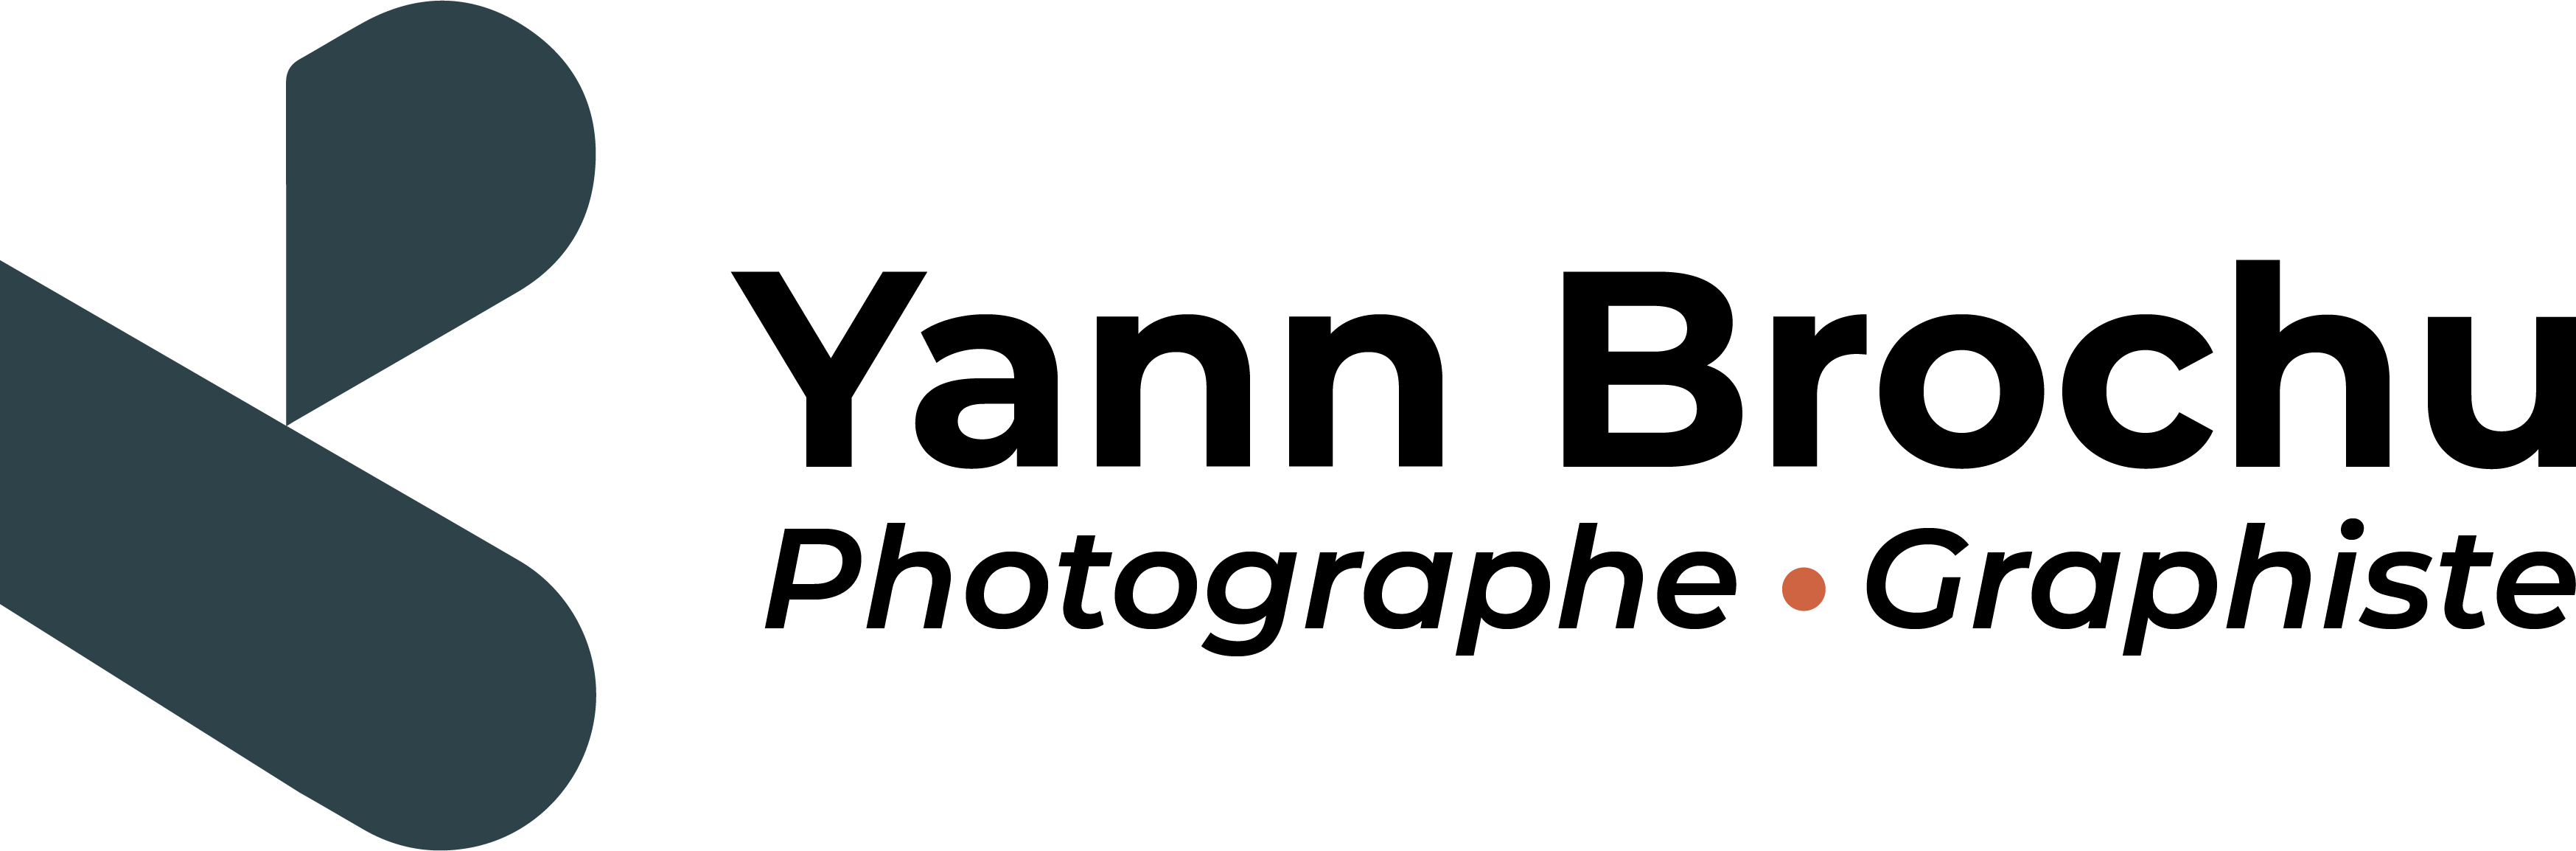 Yann Brochu